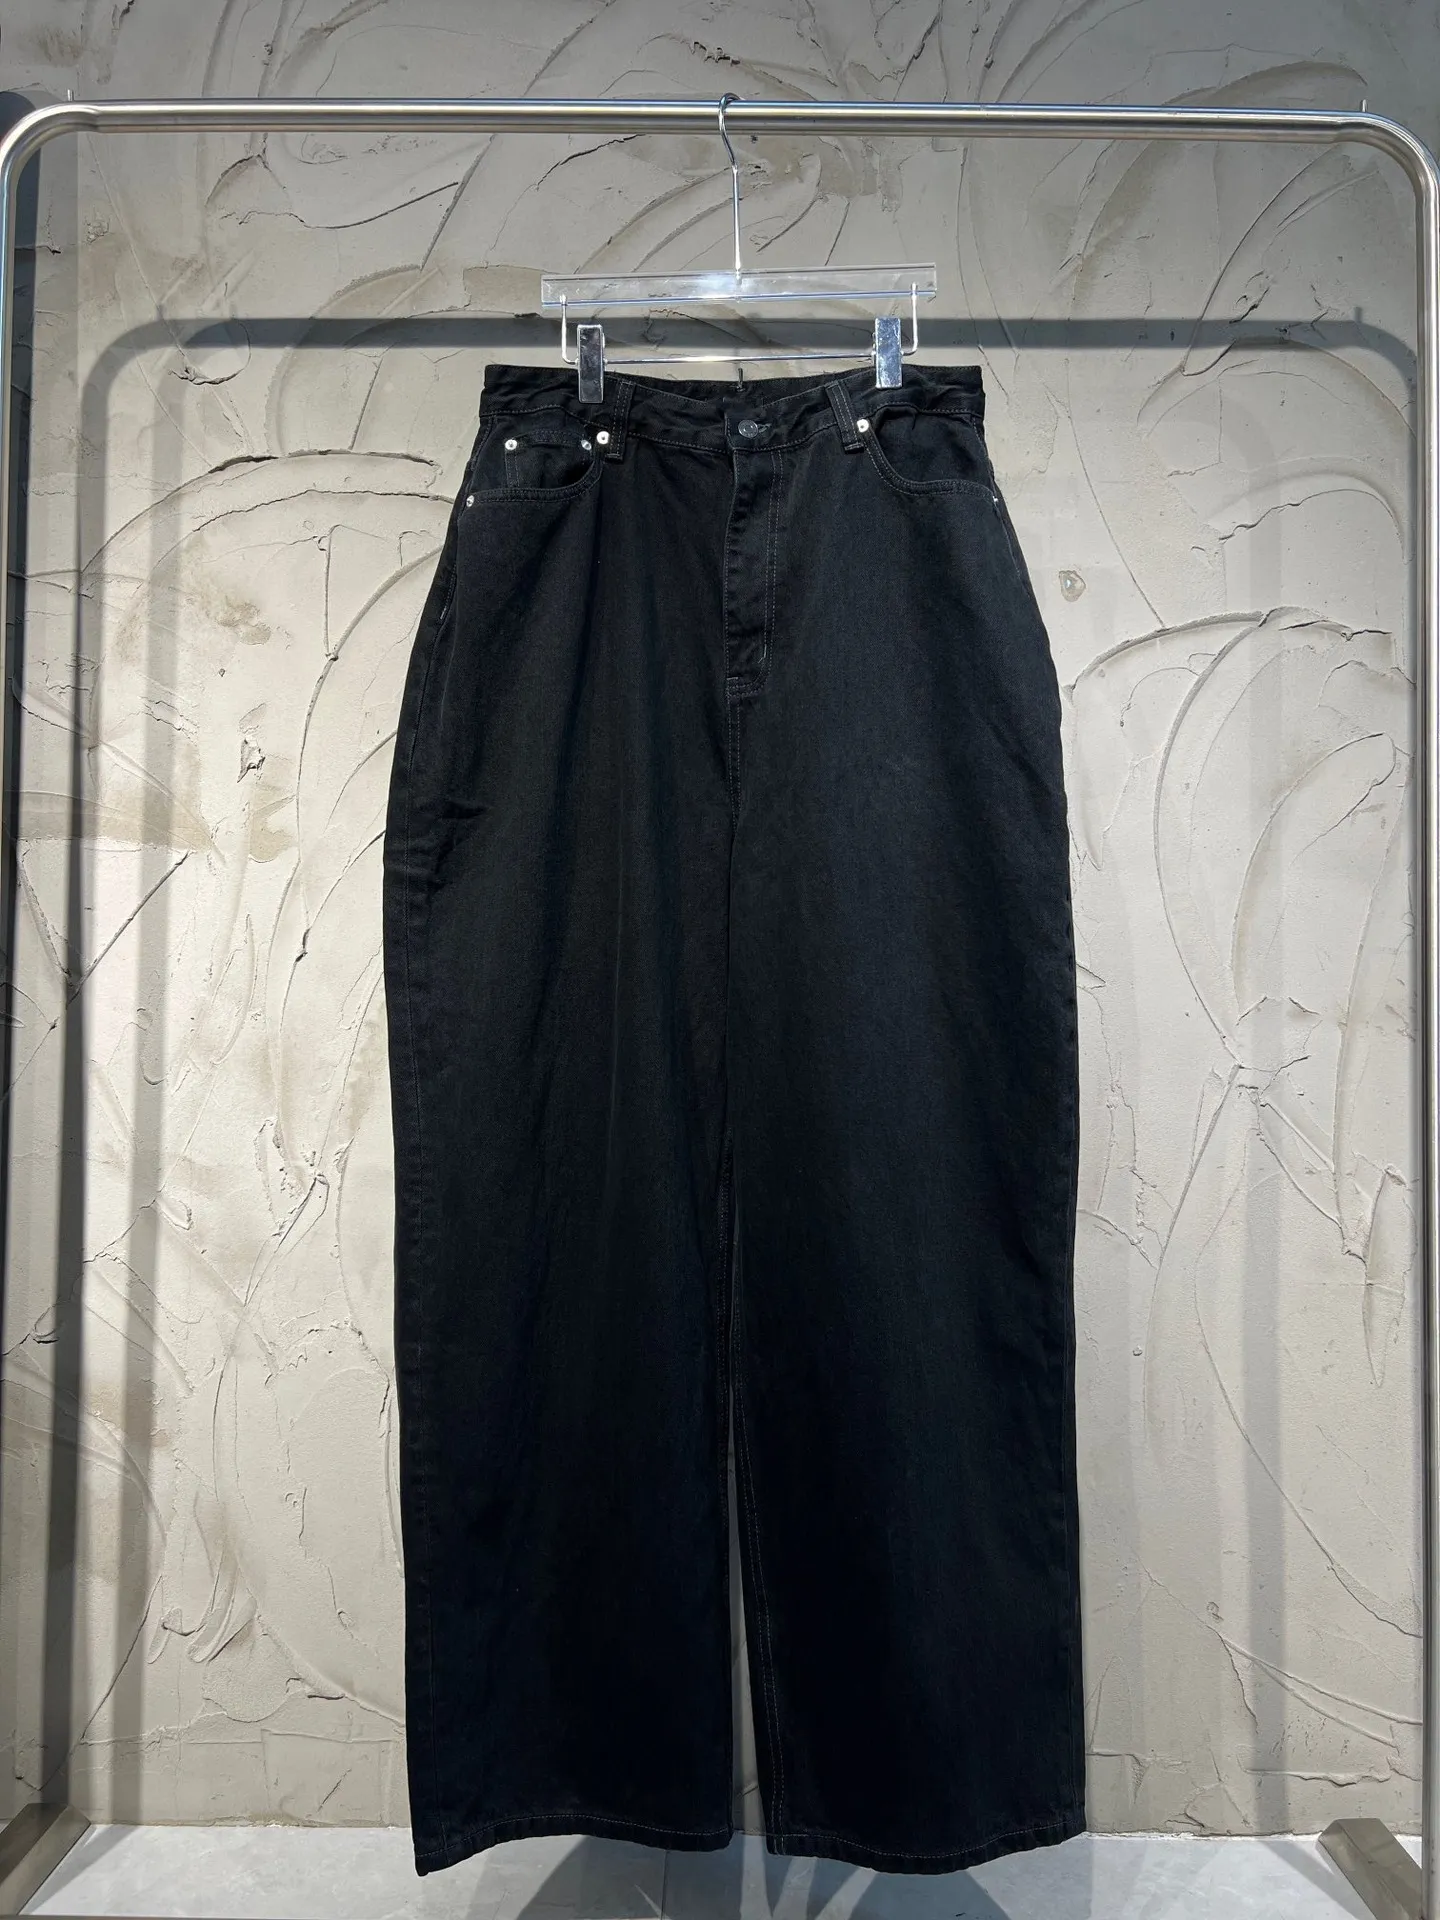 Bale leve enrugamento macio preto denim tecido calças calças de trabalho casual solto ajuste calças jeans masculino causal